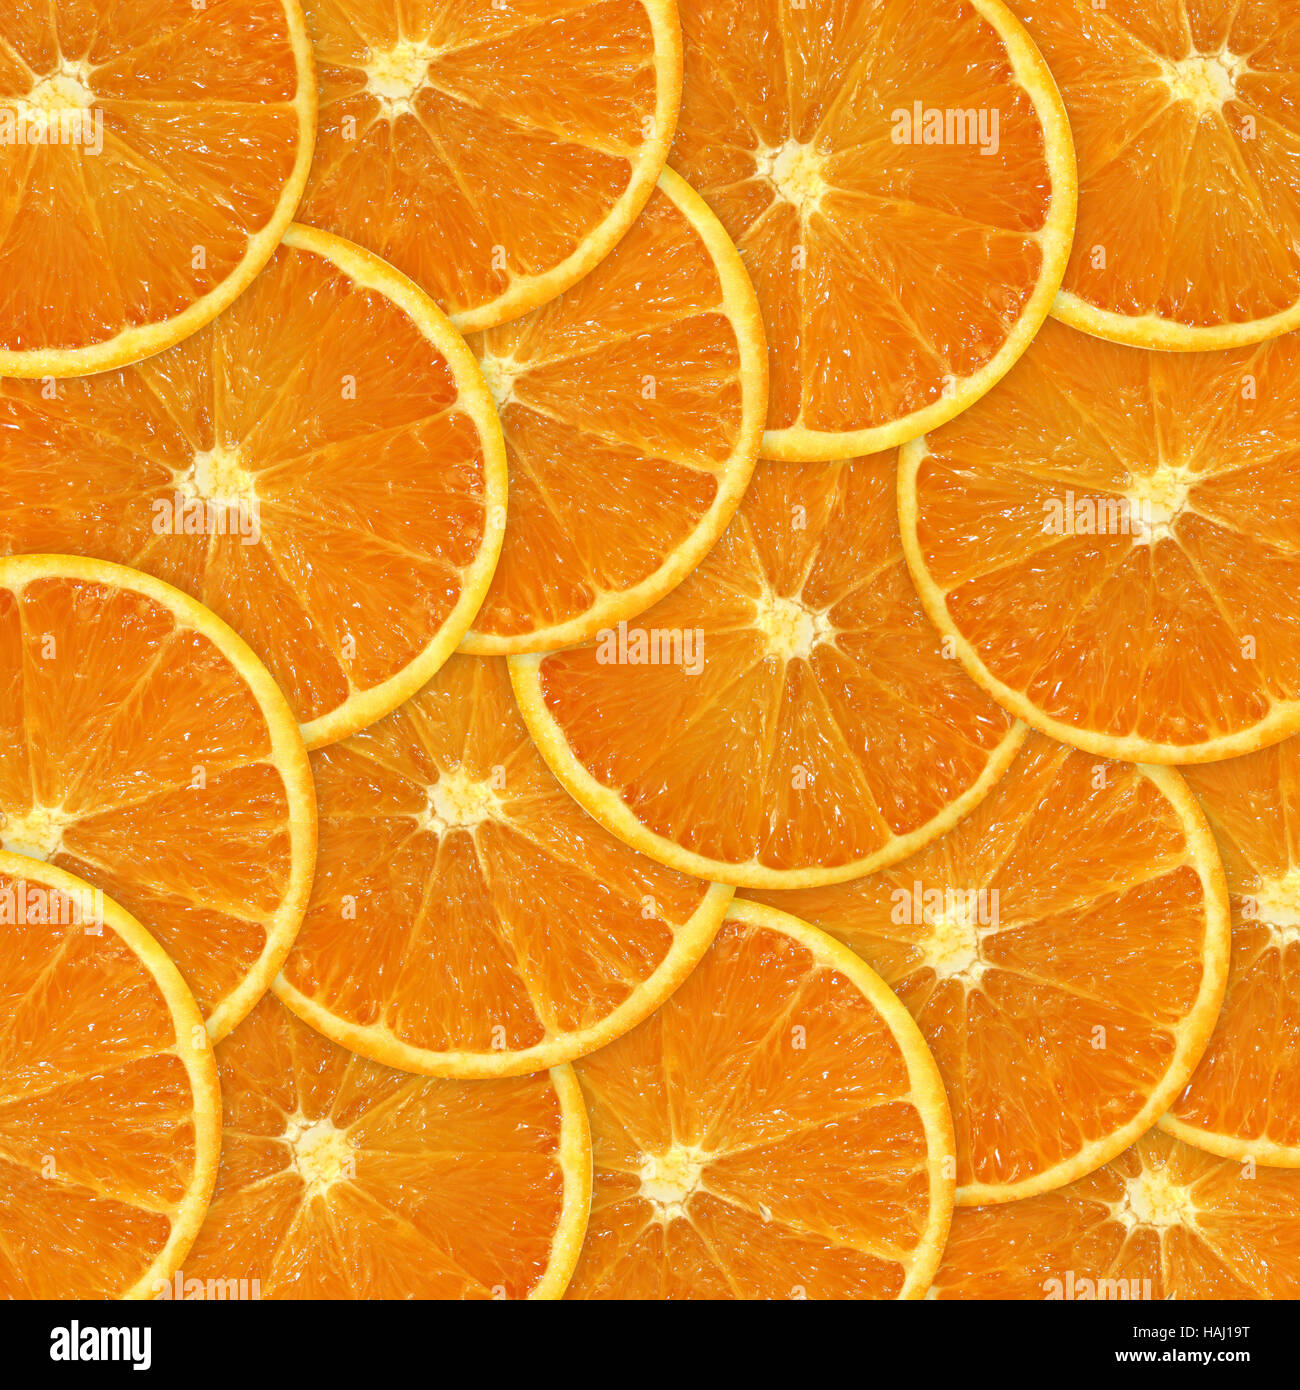 Les tranches d'orange background Banque D'Images